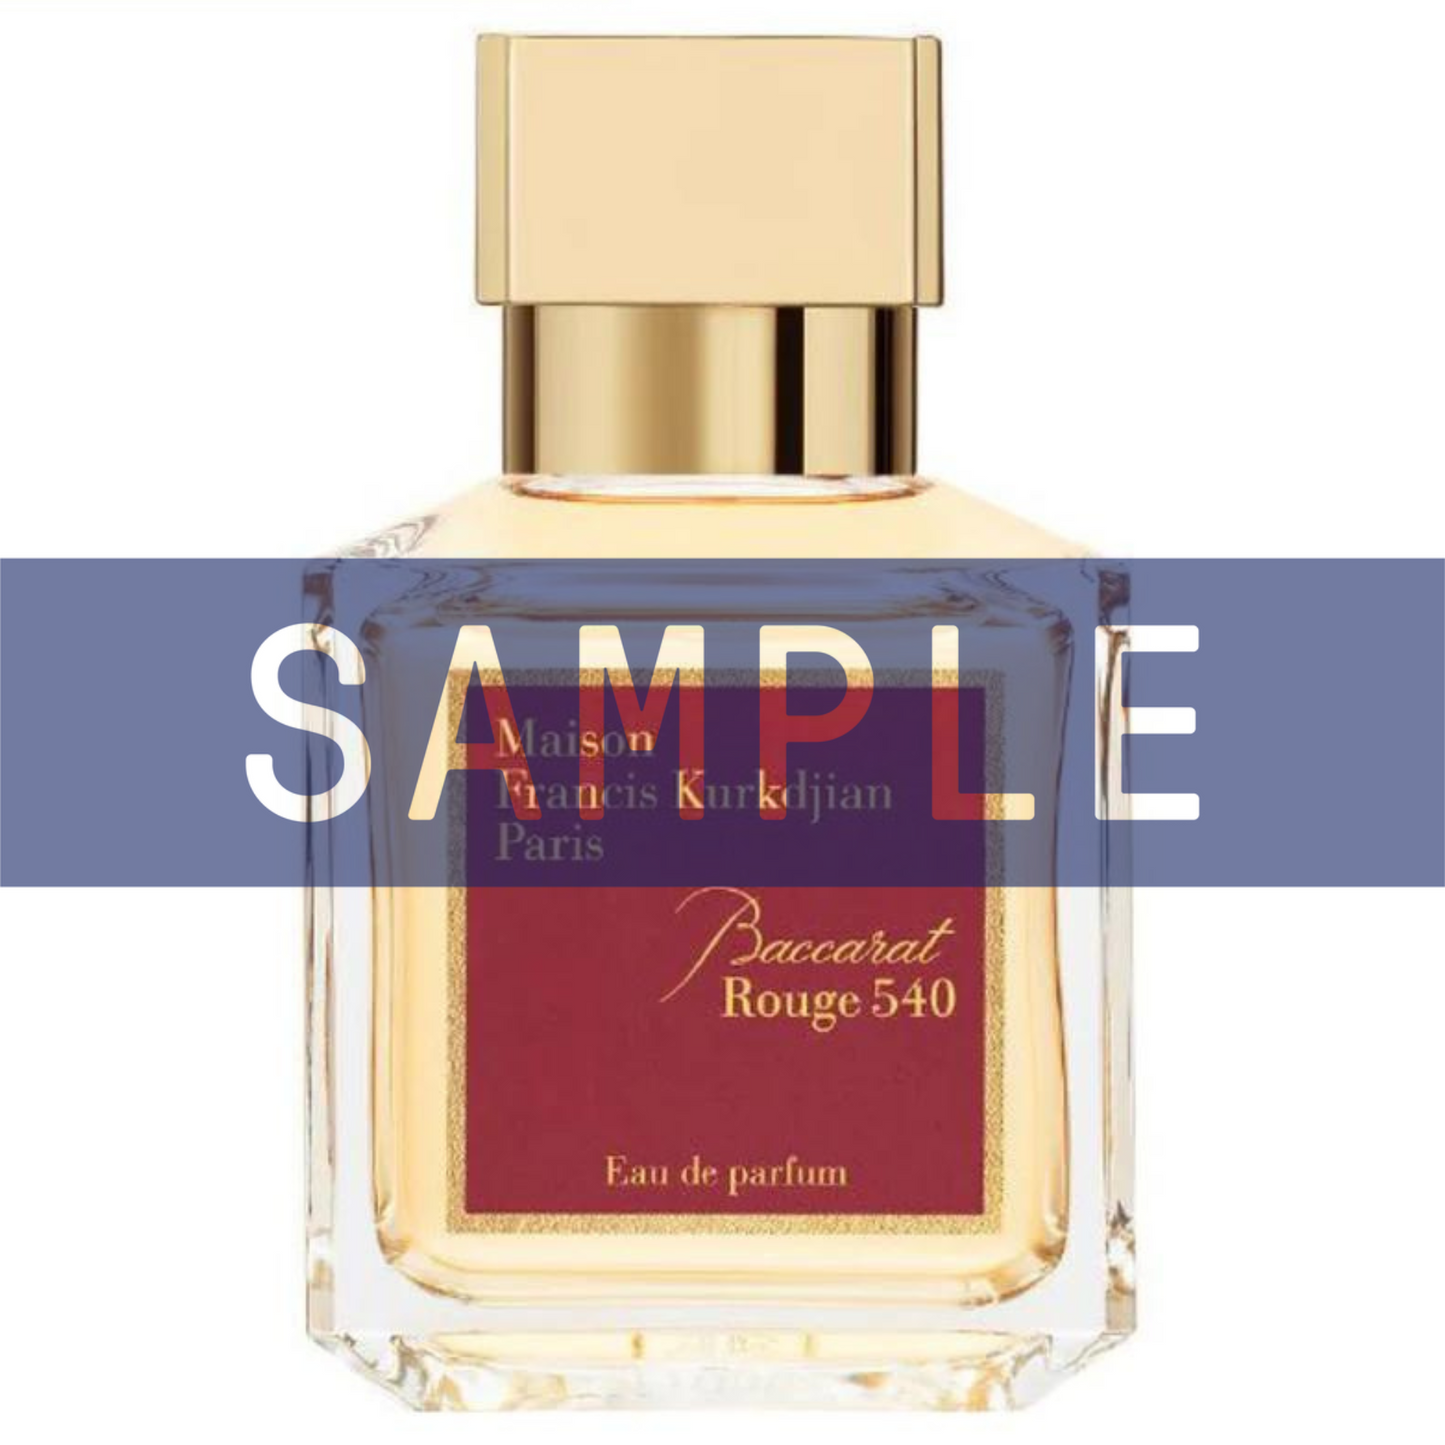 Primary Image of Sample - Baccarat Rouge 540 Eau De Parfum